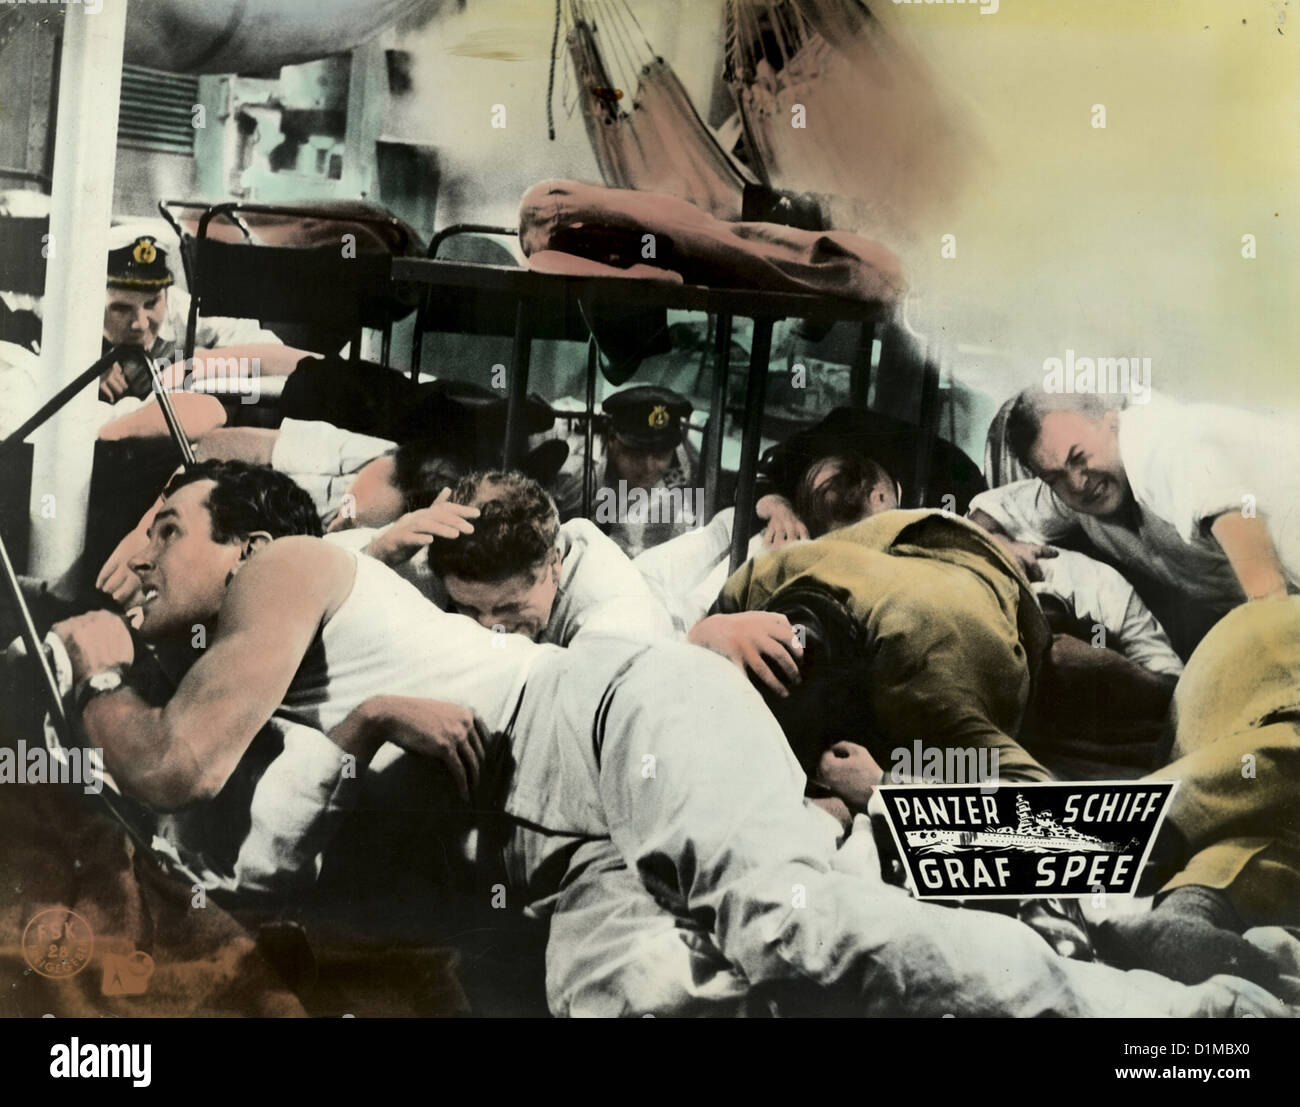 Panzerschiff Graf Spee Batalla del Río de La Plata, el Szenenbild -- Foto de stock